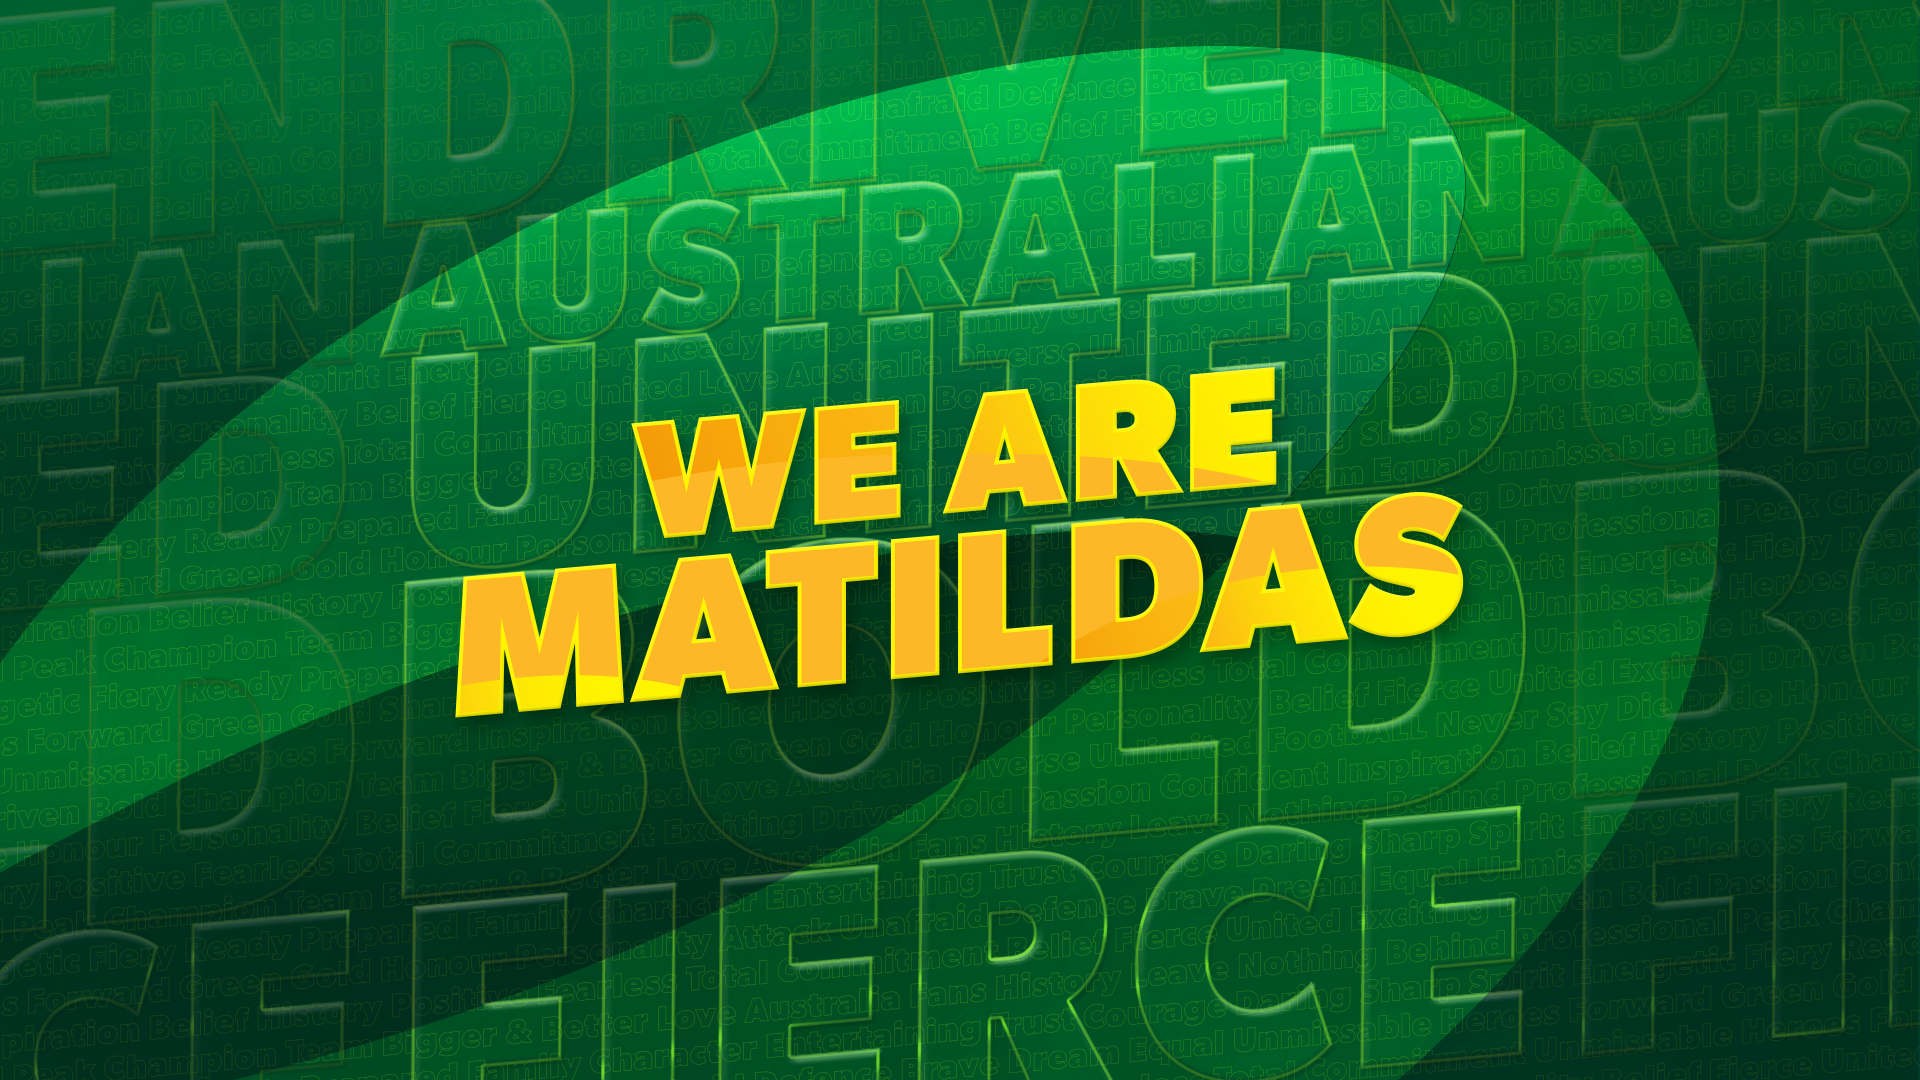 We Are Matildas